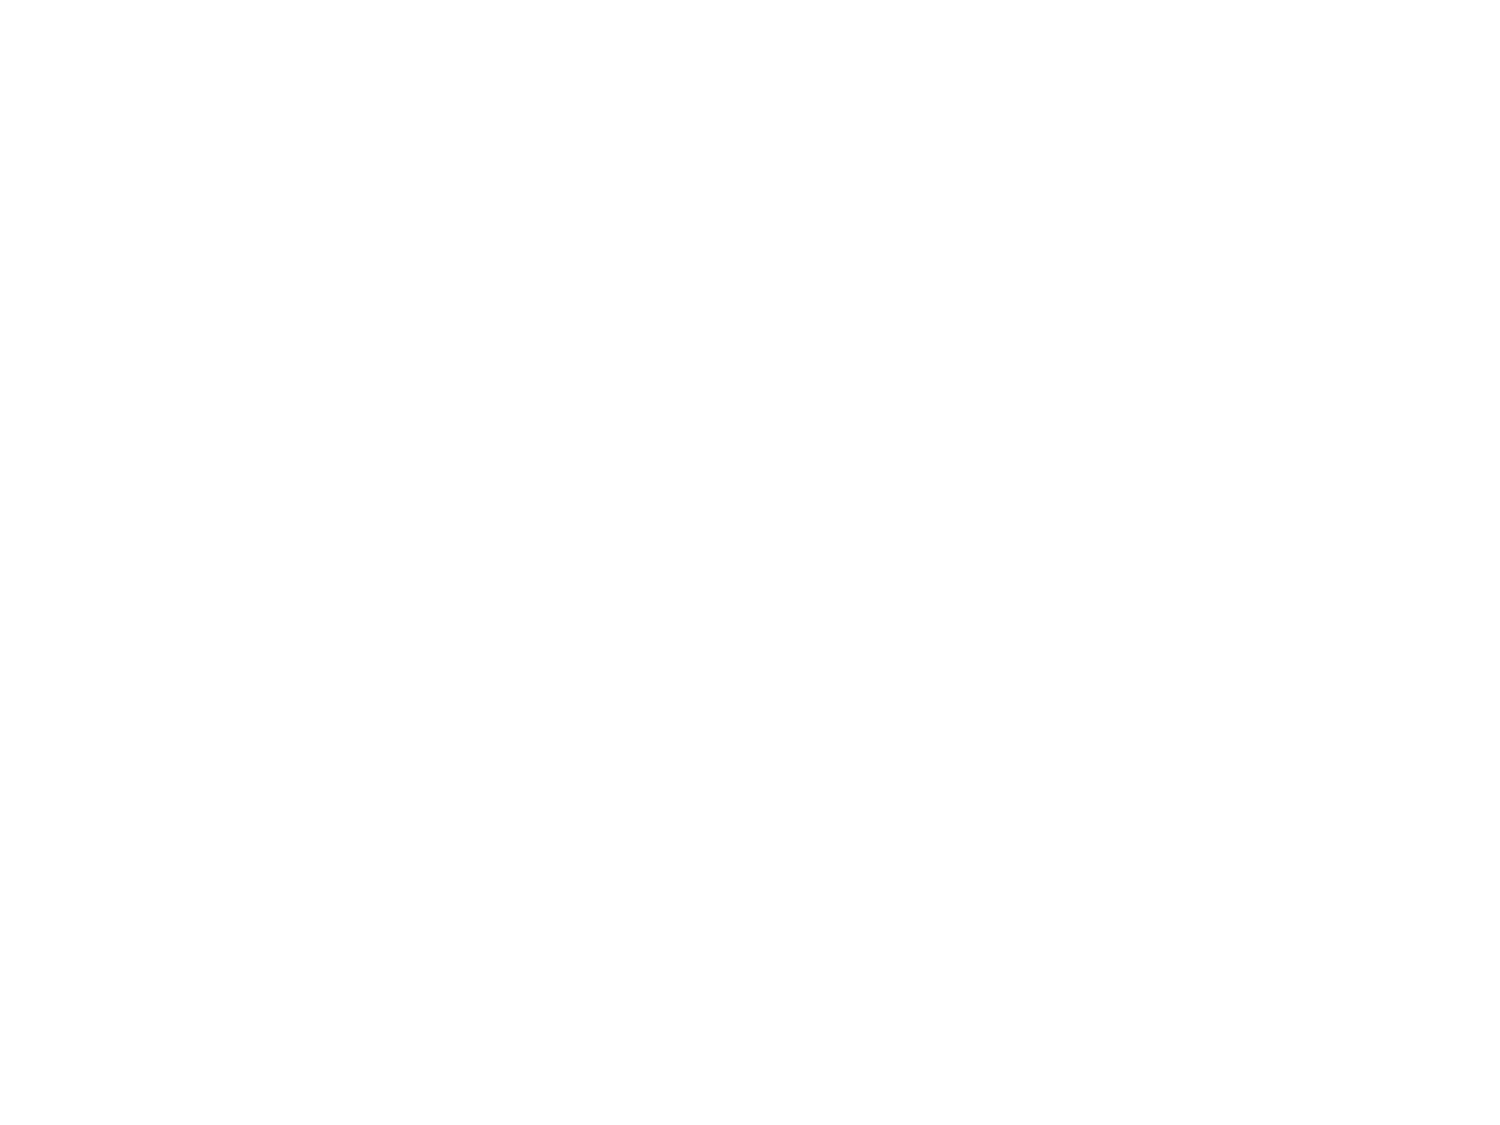 Stephen Tadgh